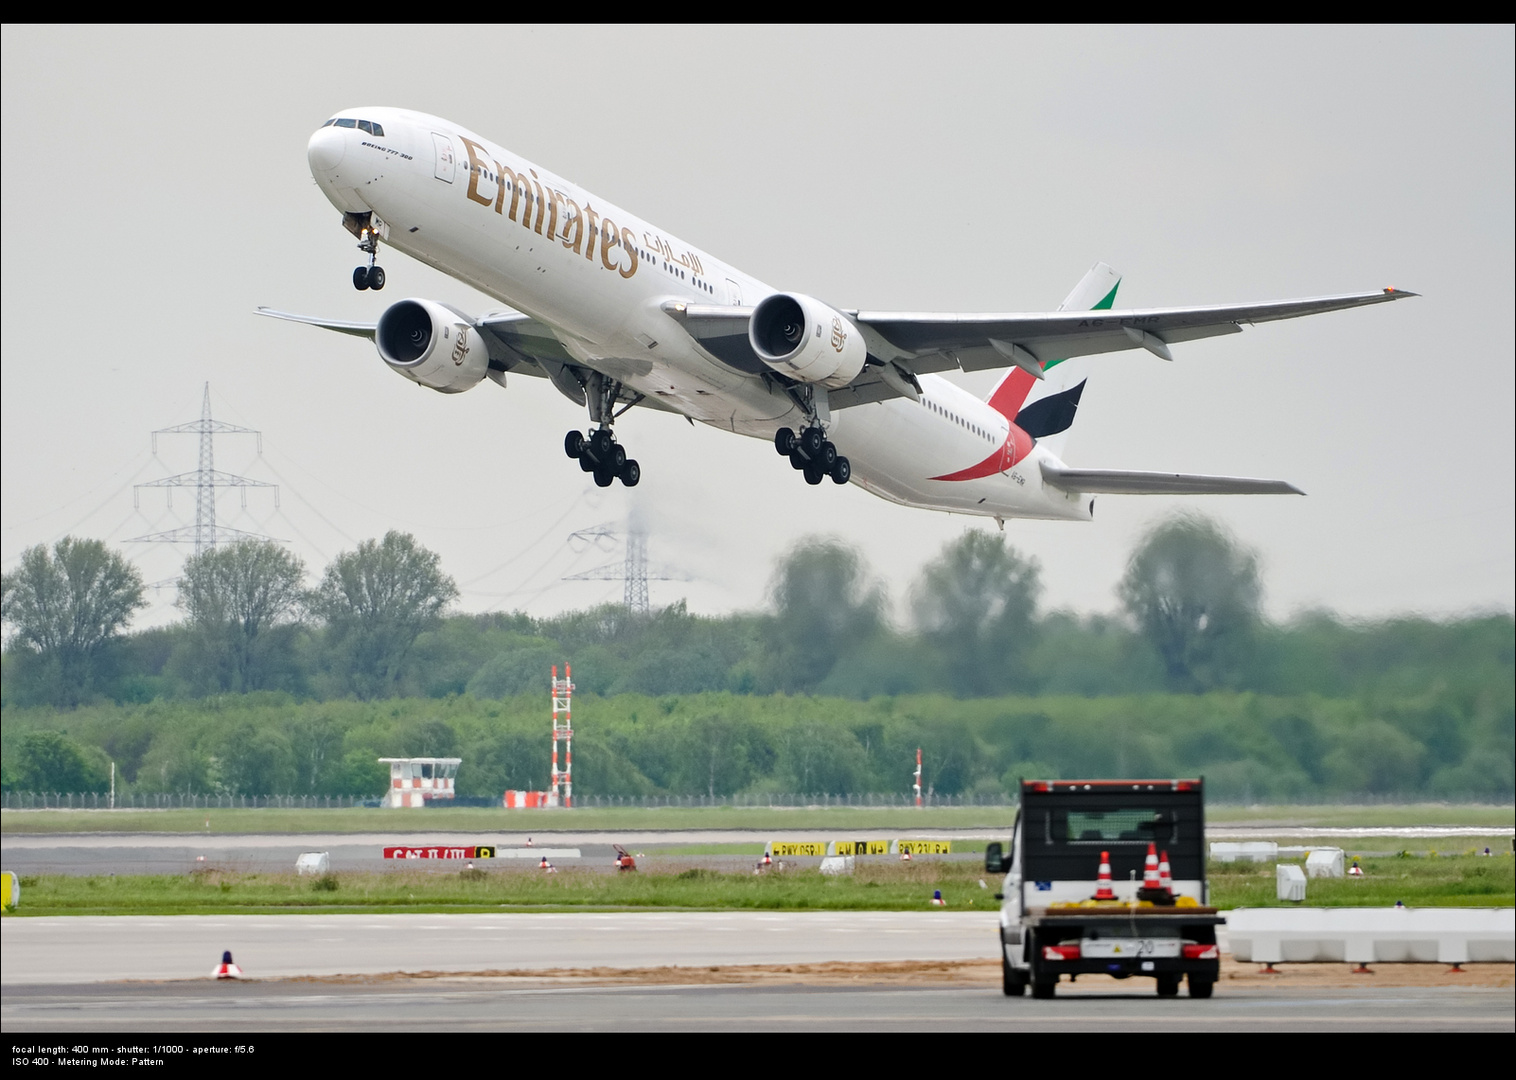 Emirates...